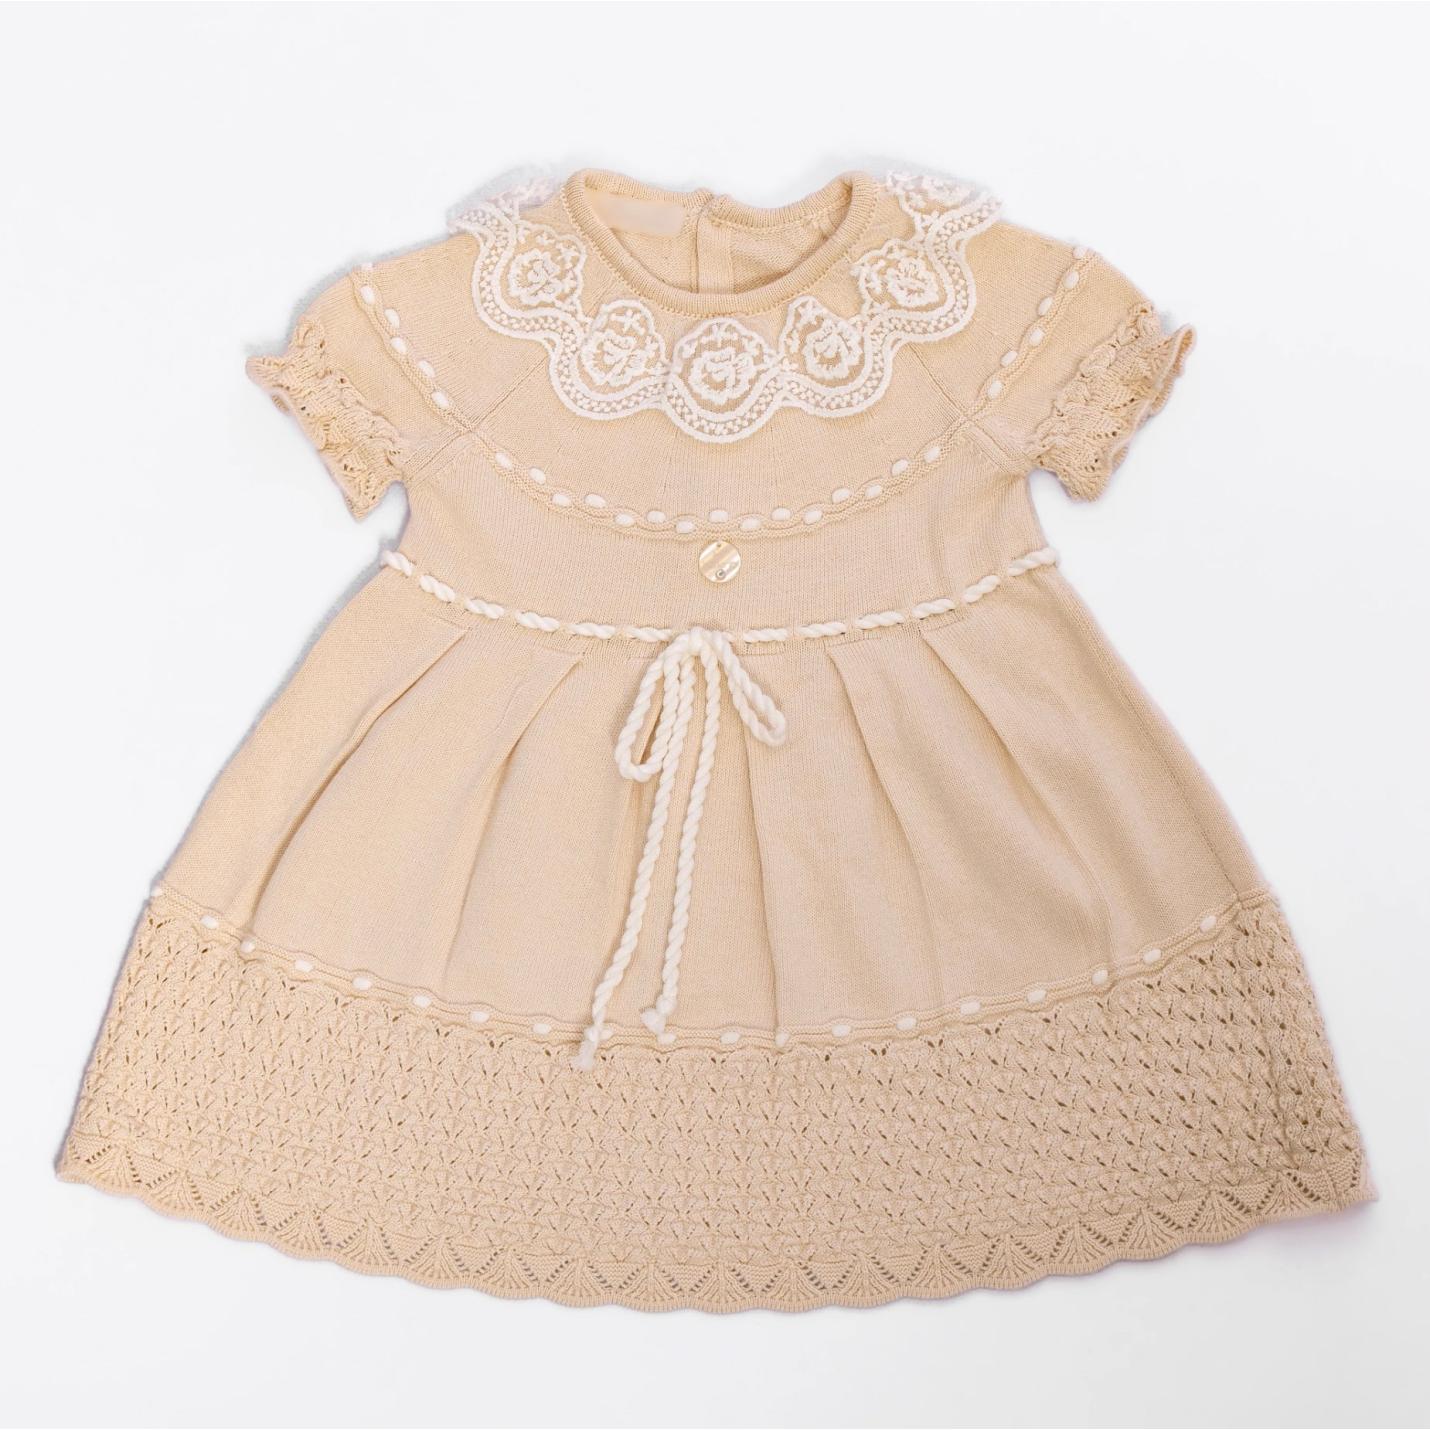 Baby lace beige dress